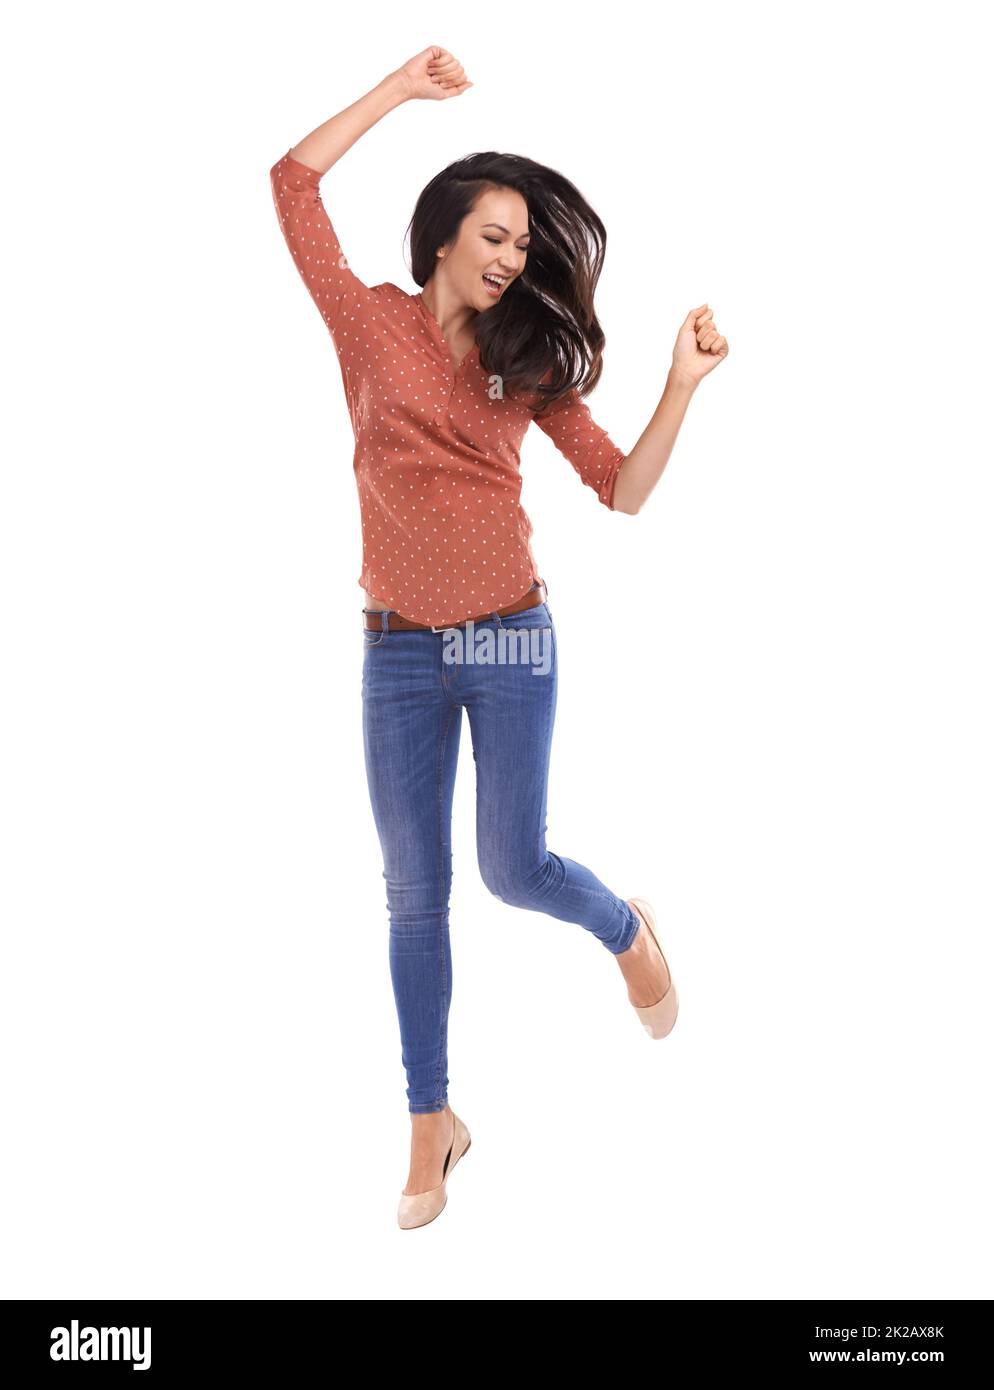 Manchmal musst du dich einfach bewegen. Studioaufnahme einer jungen Frau, die aus Freude auf Weiß springt. Stockfoto